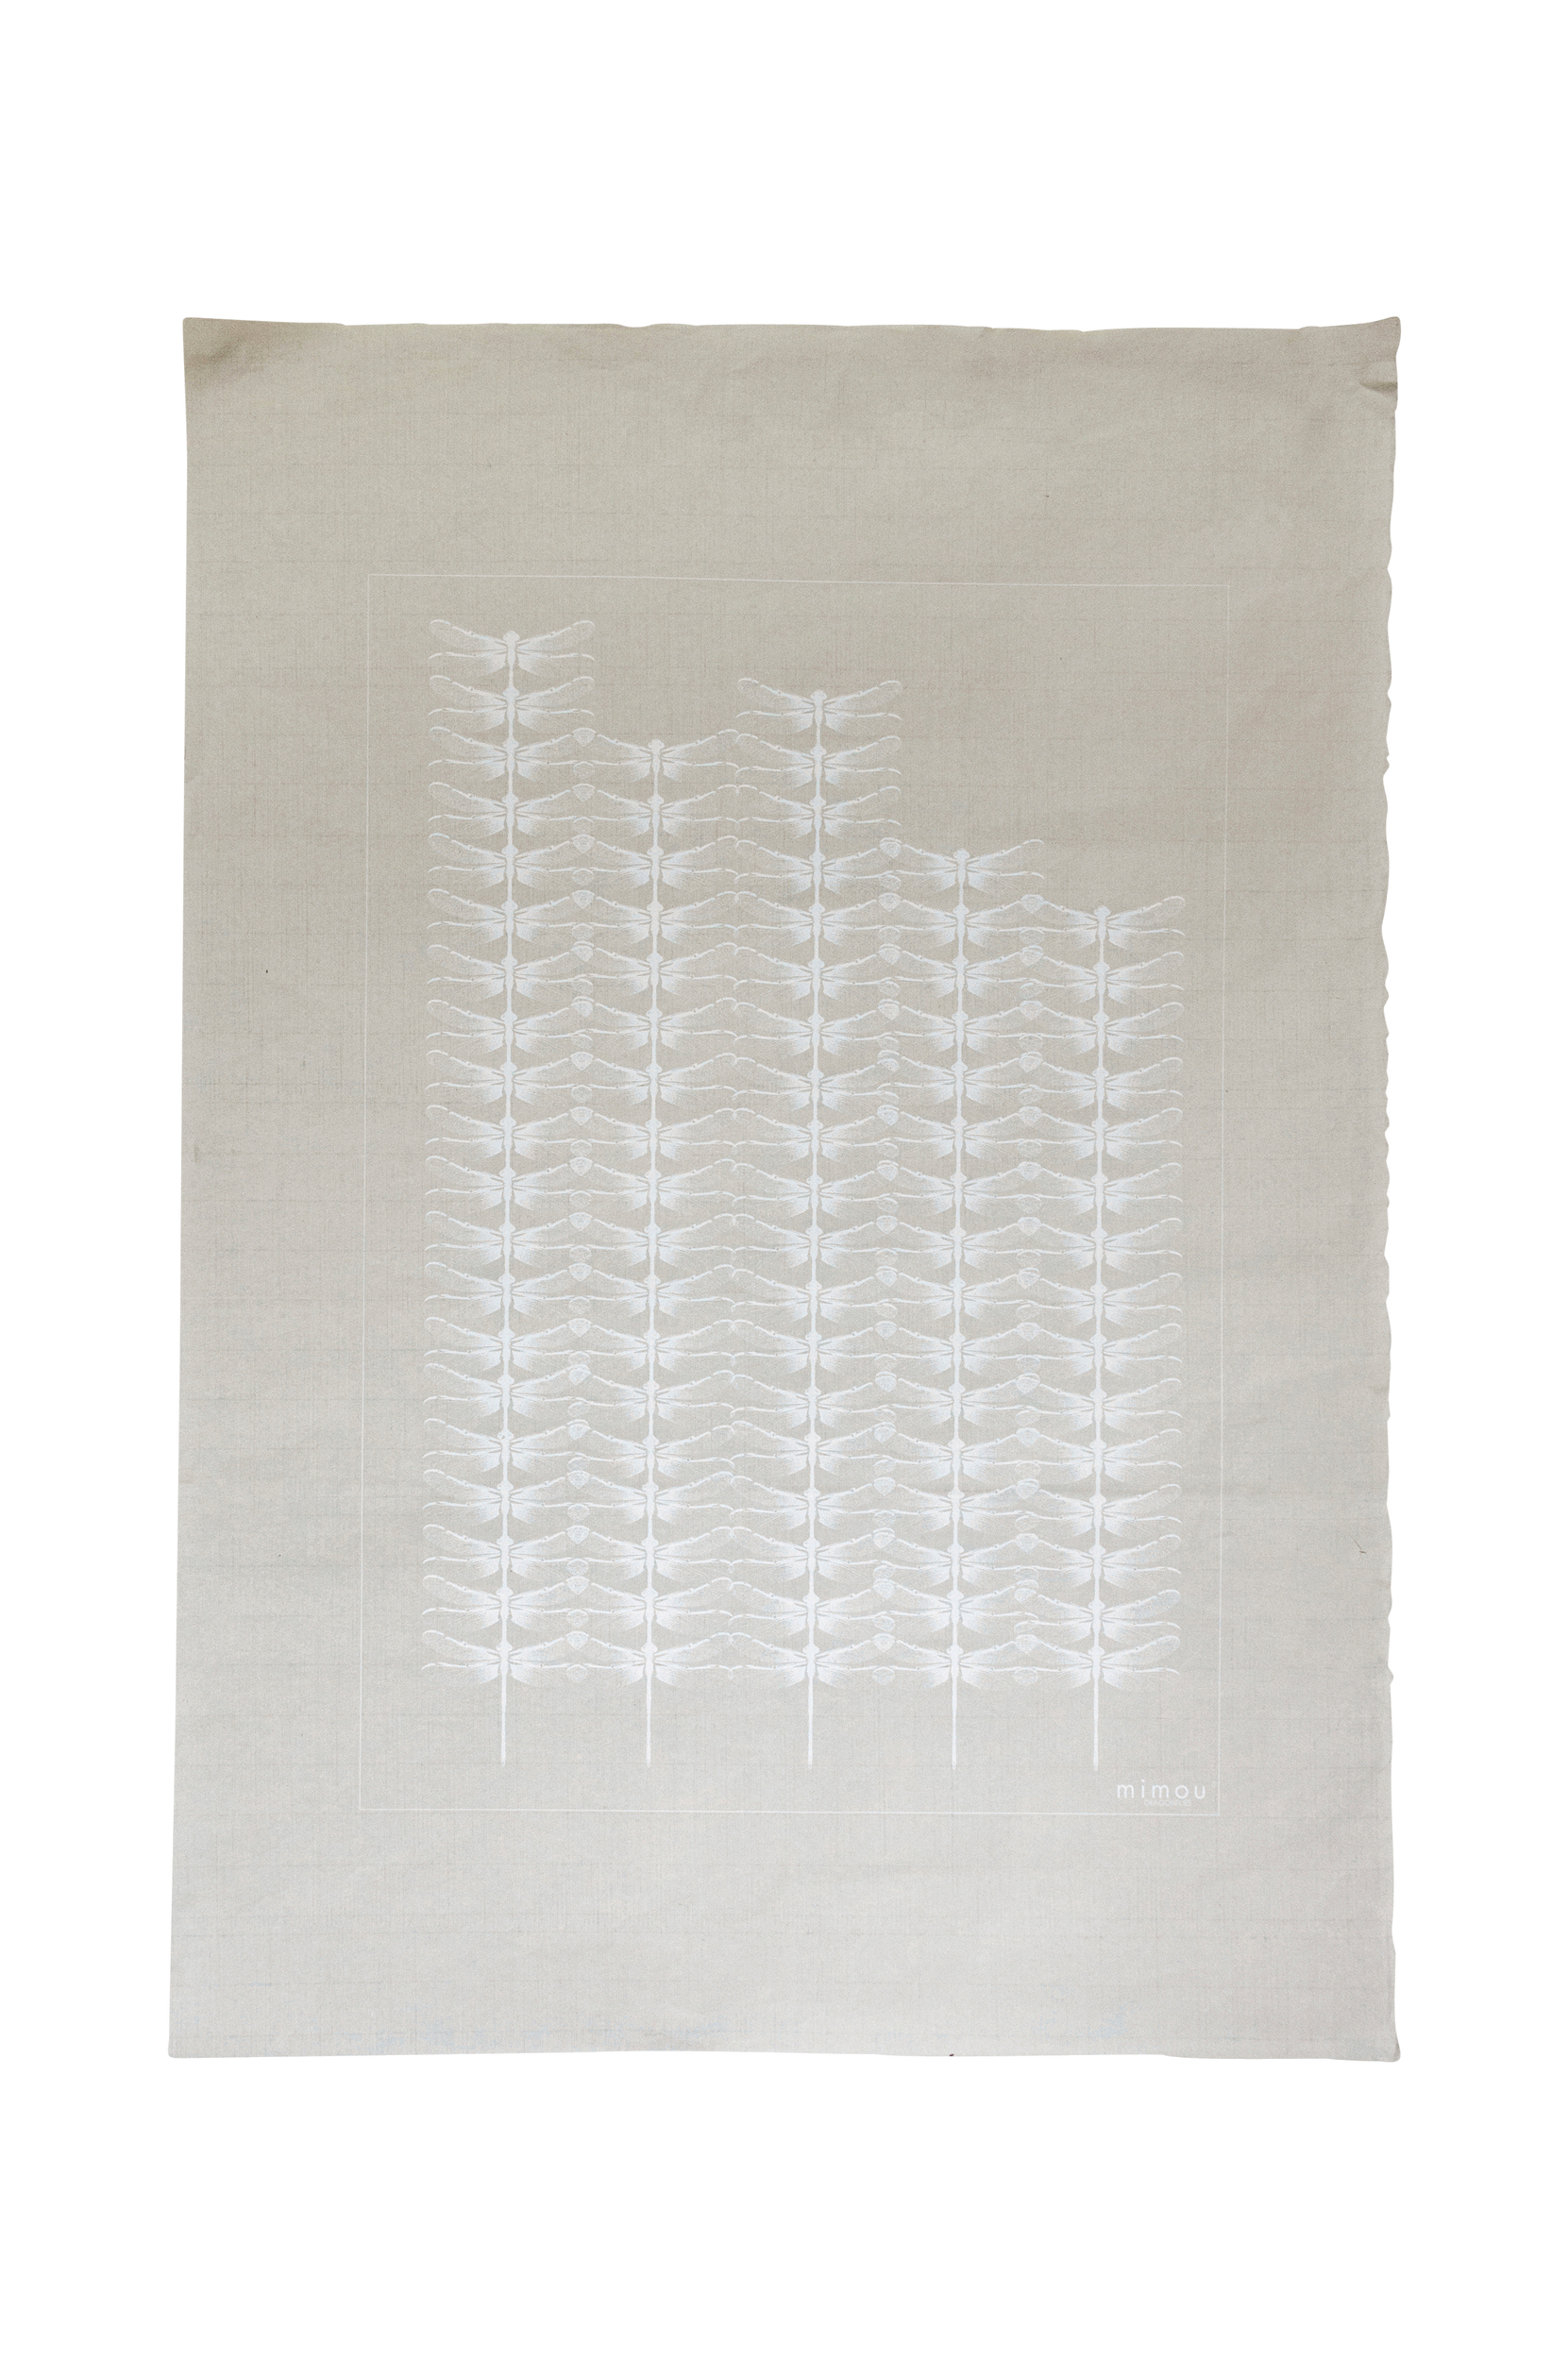 Käsinpainettu Dragonflies juliste 50x70 cm, Mimou